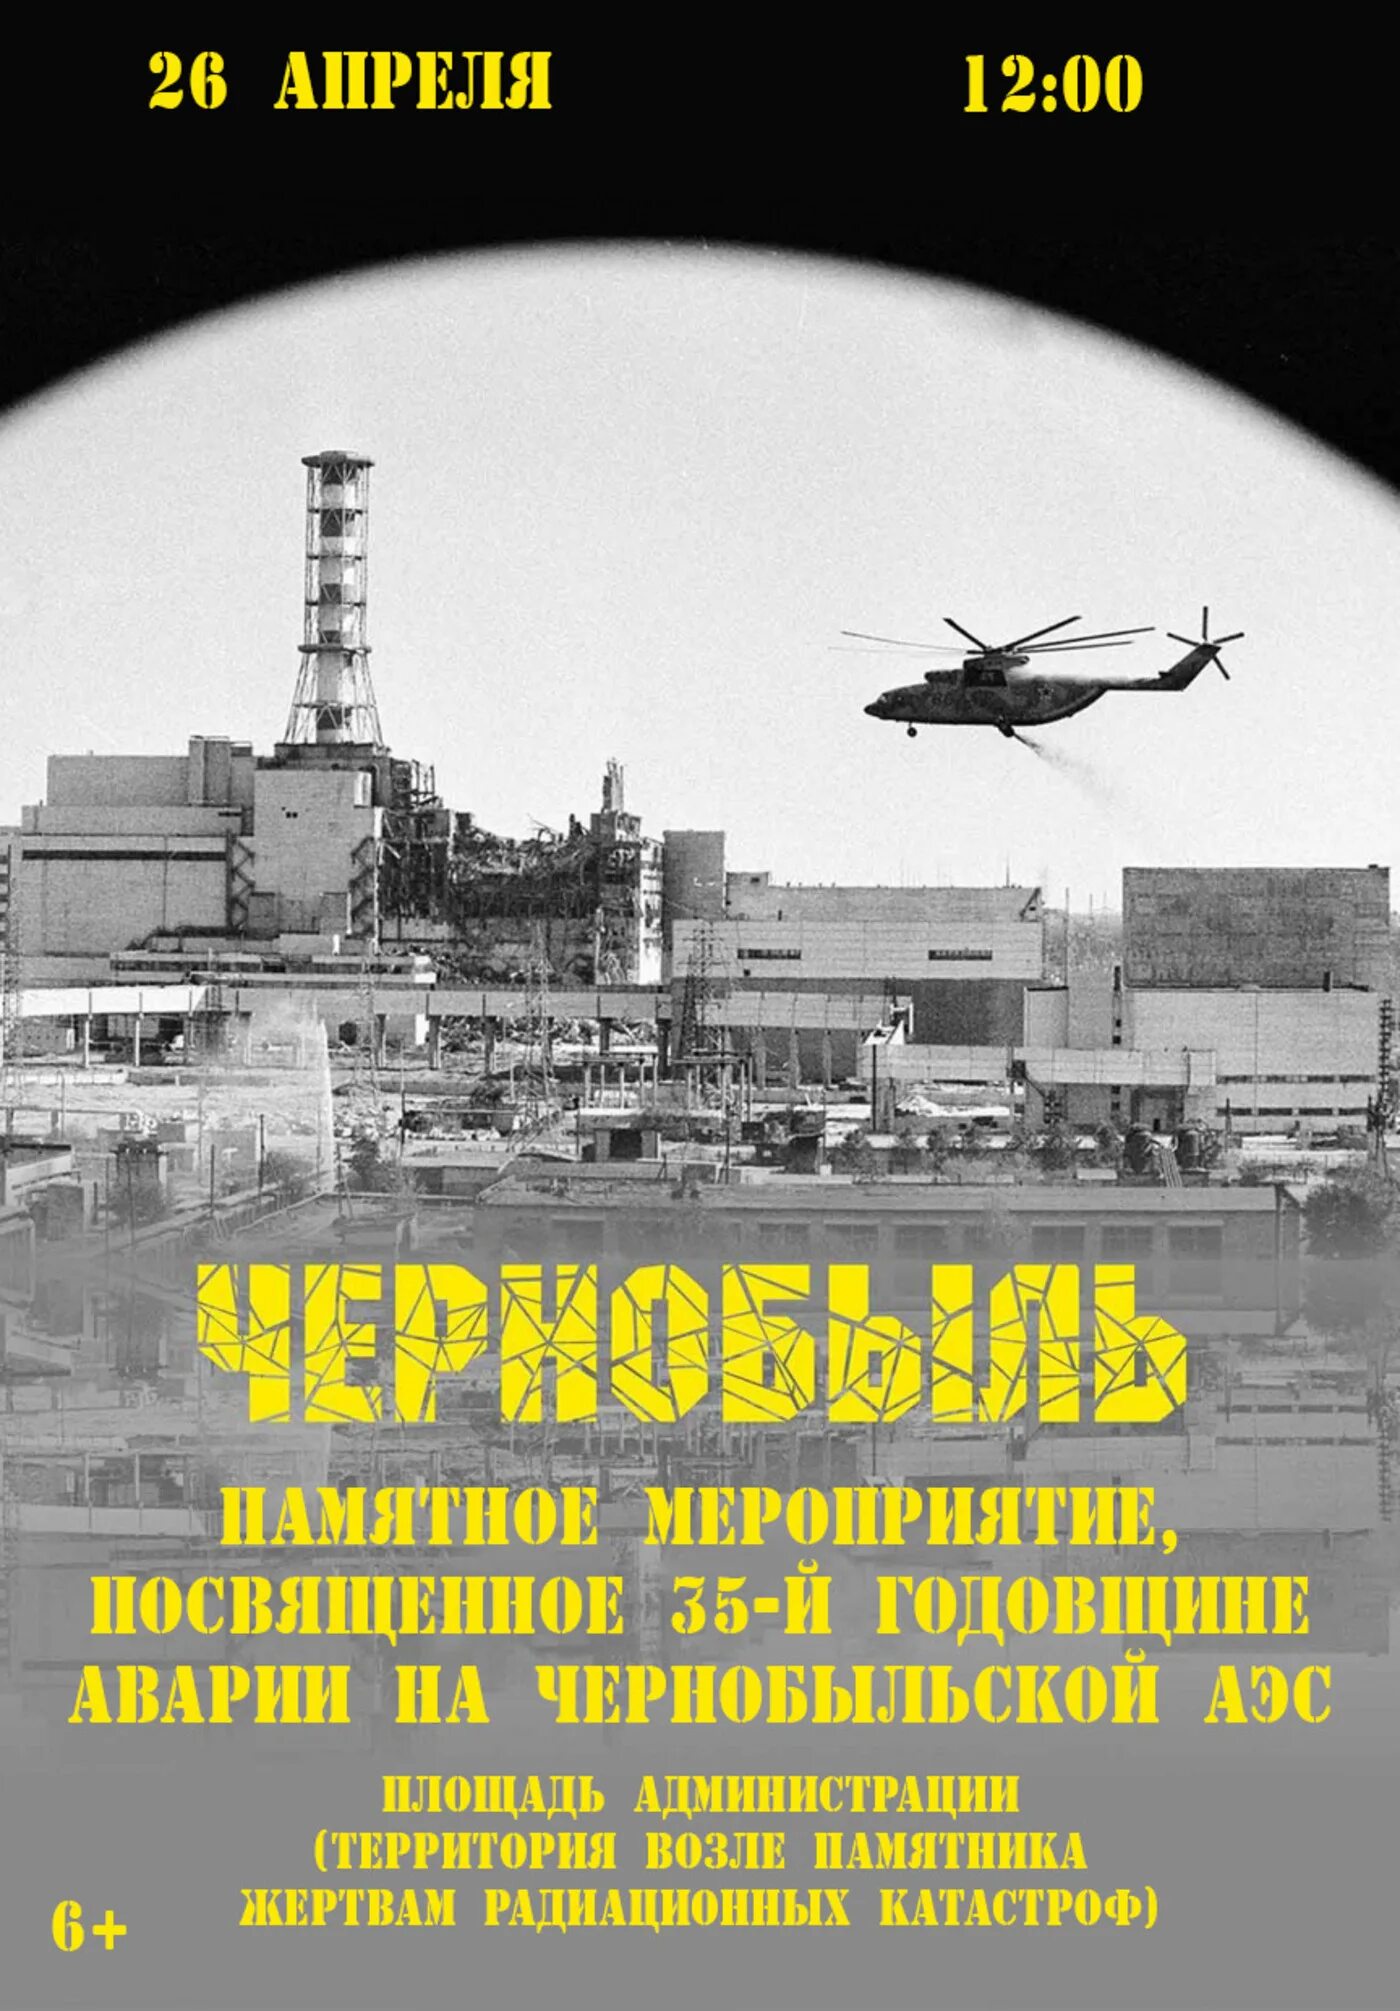 Годовщина чернобыльской аэс. Чернобыль 26 апреля 1986. 35 Лет Чернобыльской АЭС. 35 Лет Чернобыльской катастрофе. Годовщина аварии на Чернобыльской АЭС.